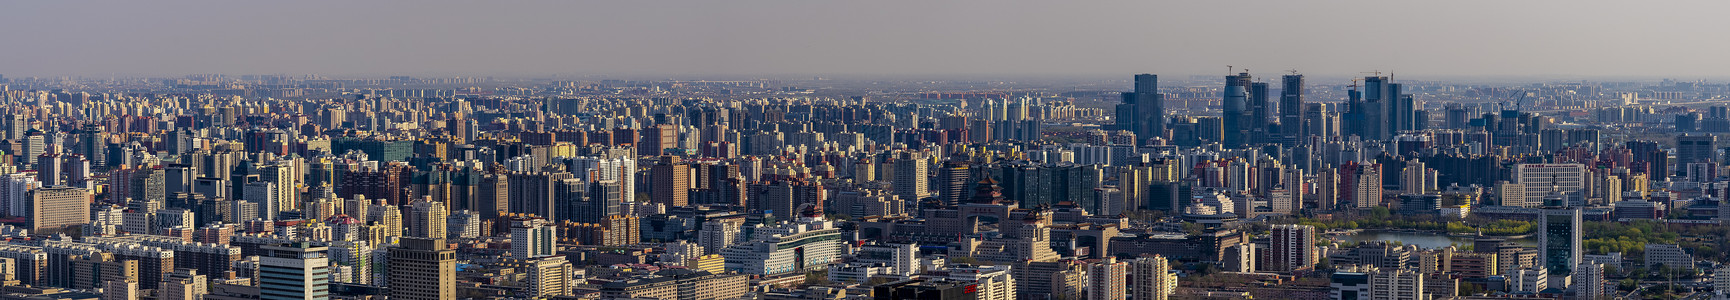 全景北京建筑背景图片